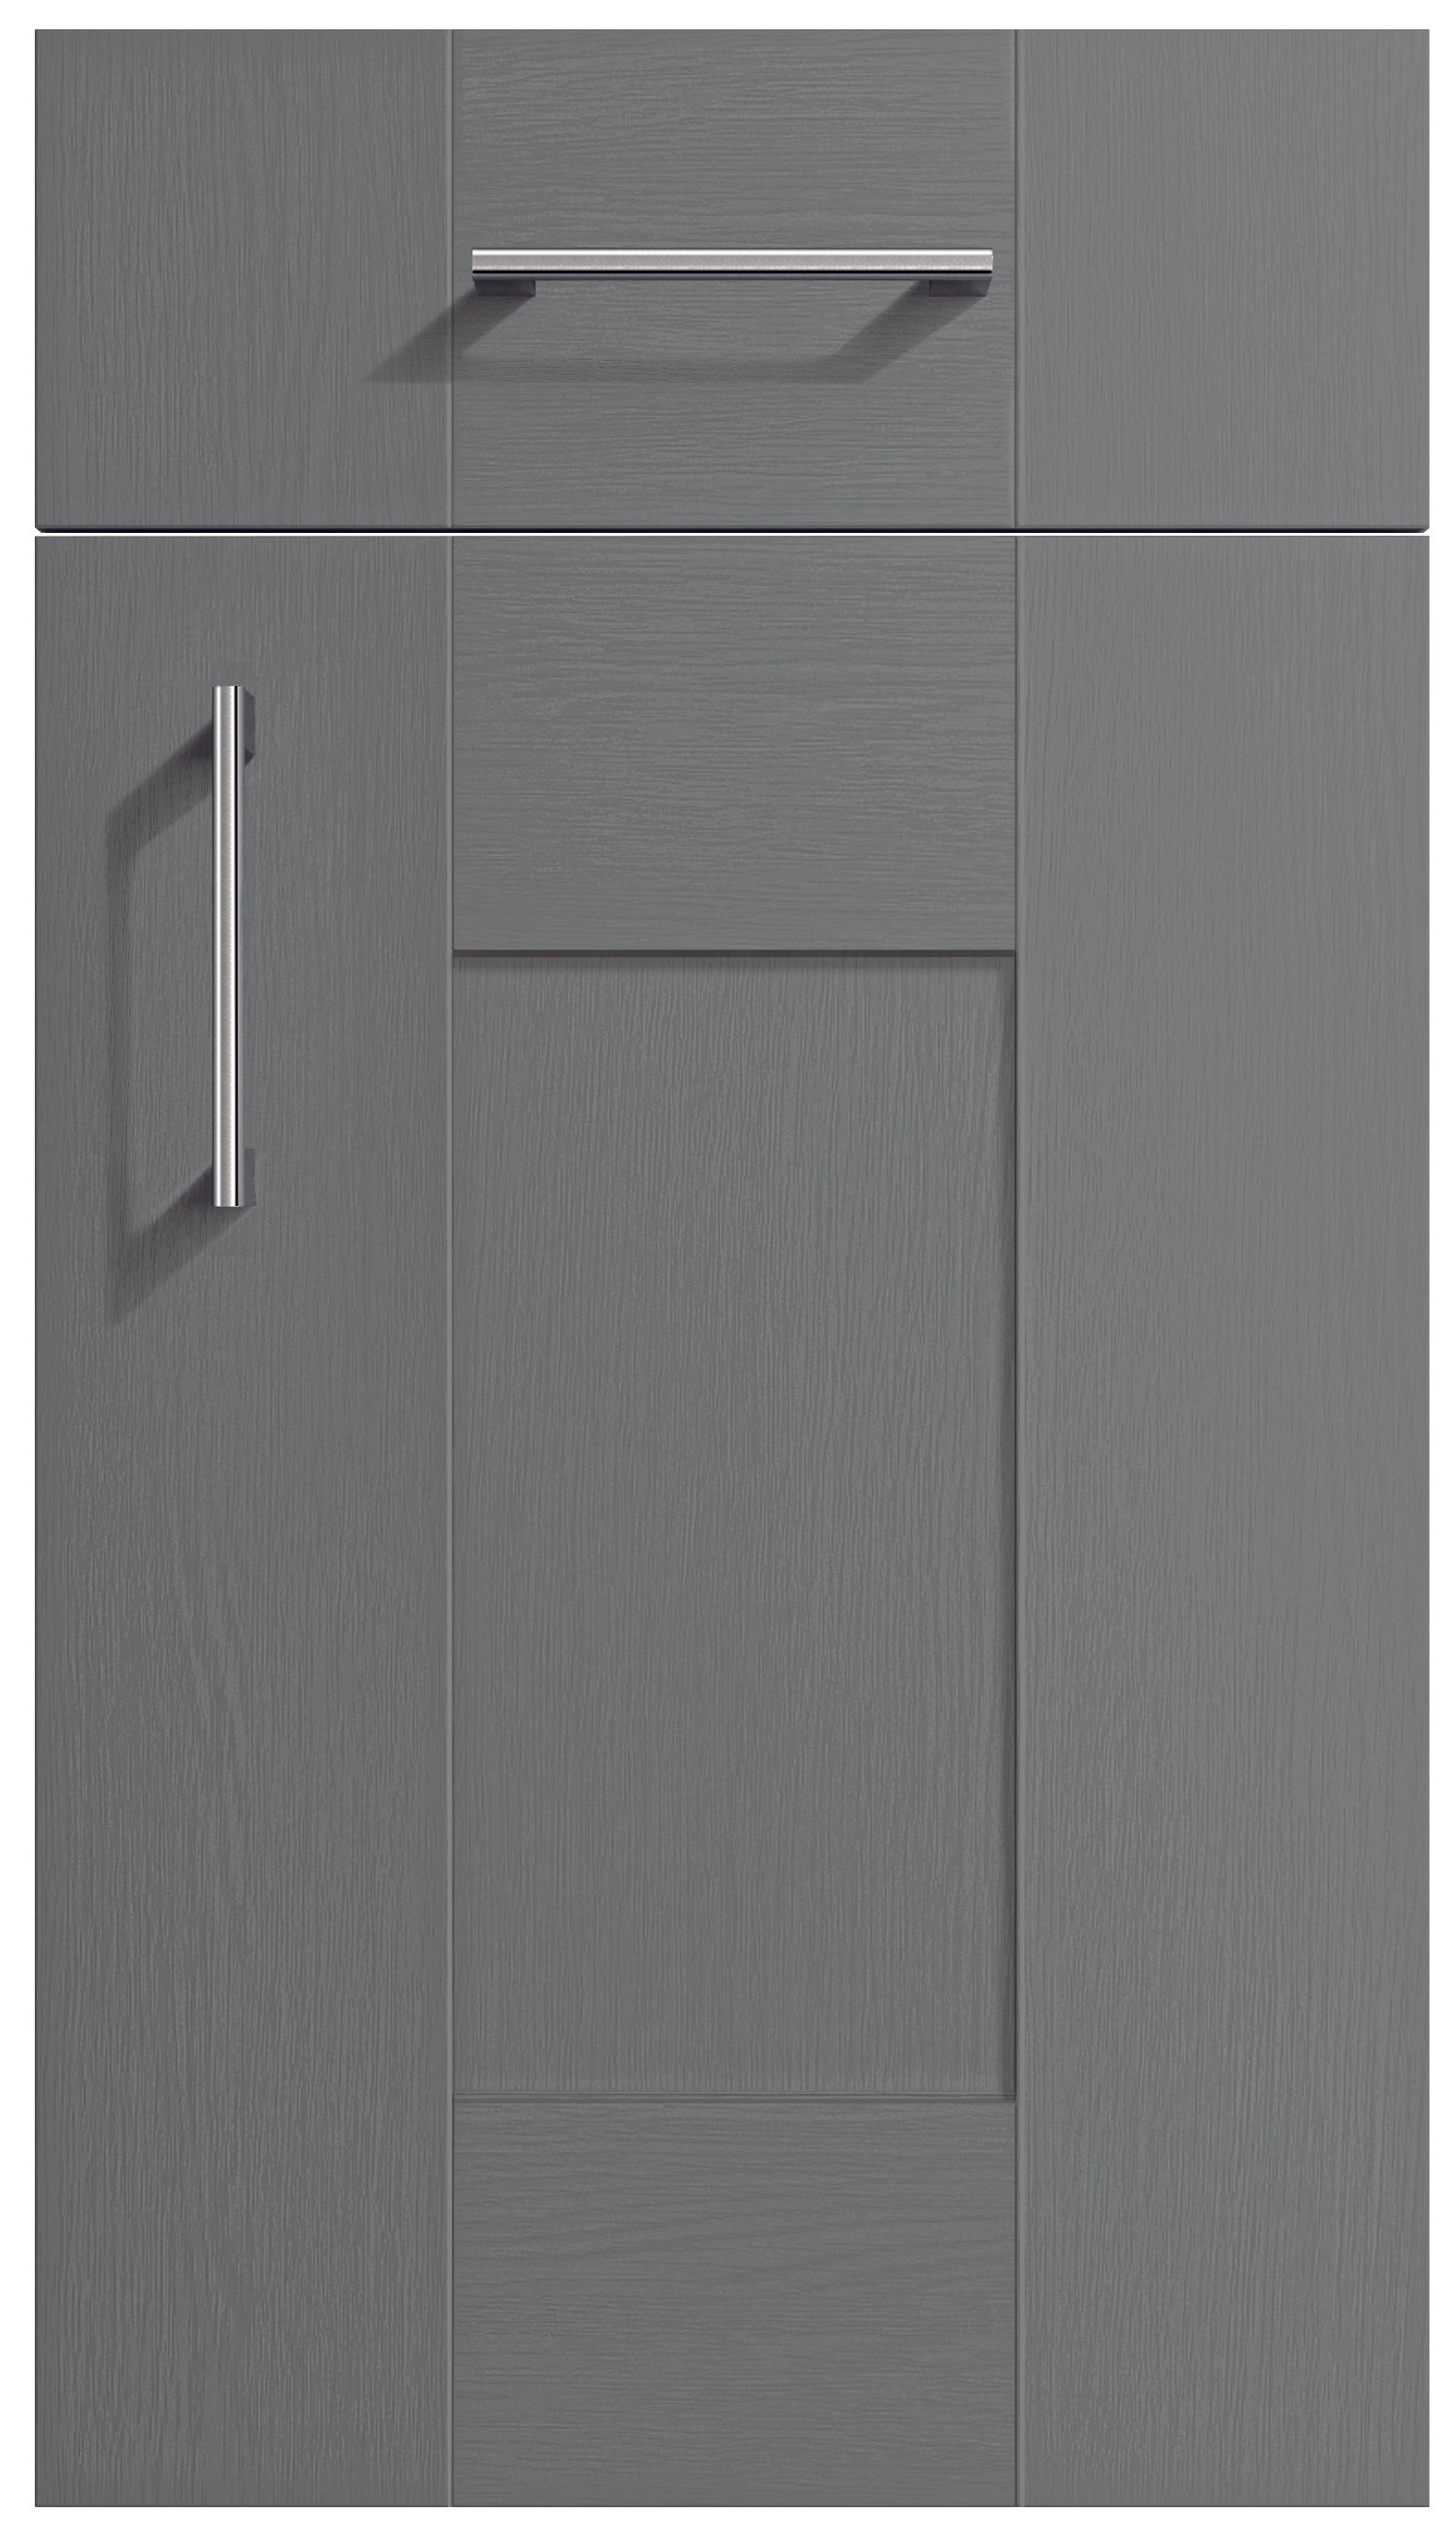 Cartmel Dust Grey Woodgrain Effect Shaker Kitchen Cupboard Doors Buy Kitchen Doors